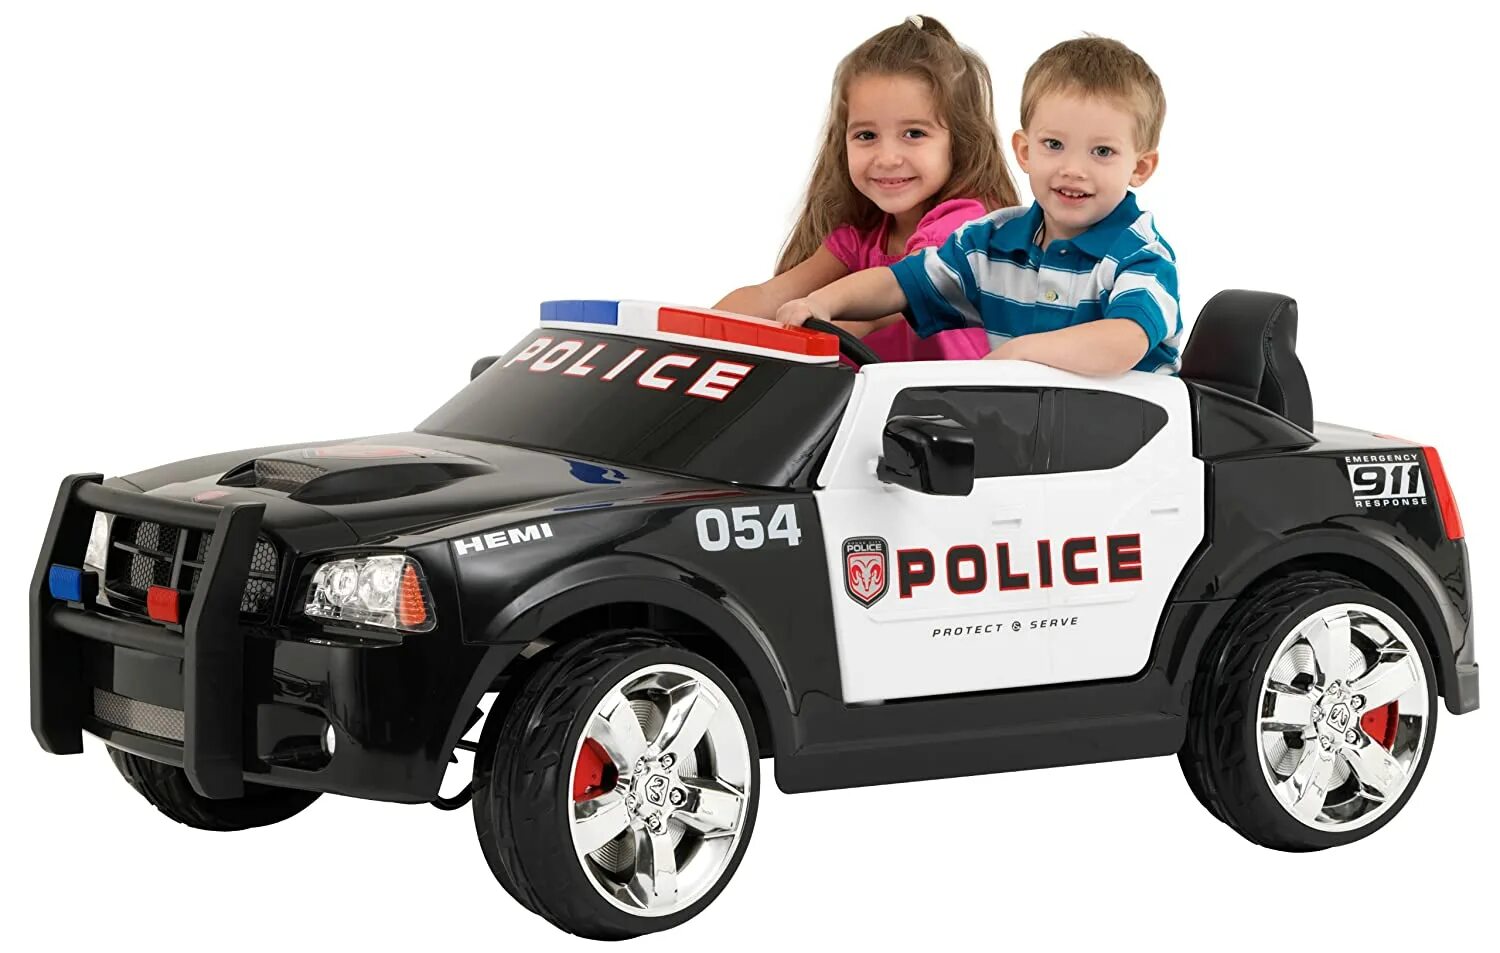 Kids cars автомобиль Police dodge. Kids cars автомобиль Police kt6598. Полицейский Додж Чарджер электромобиль. Электромобиль dodge Police xh666. Машинки хочу машина